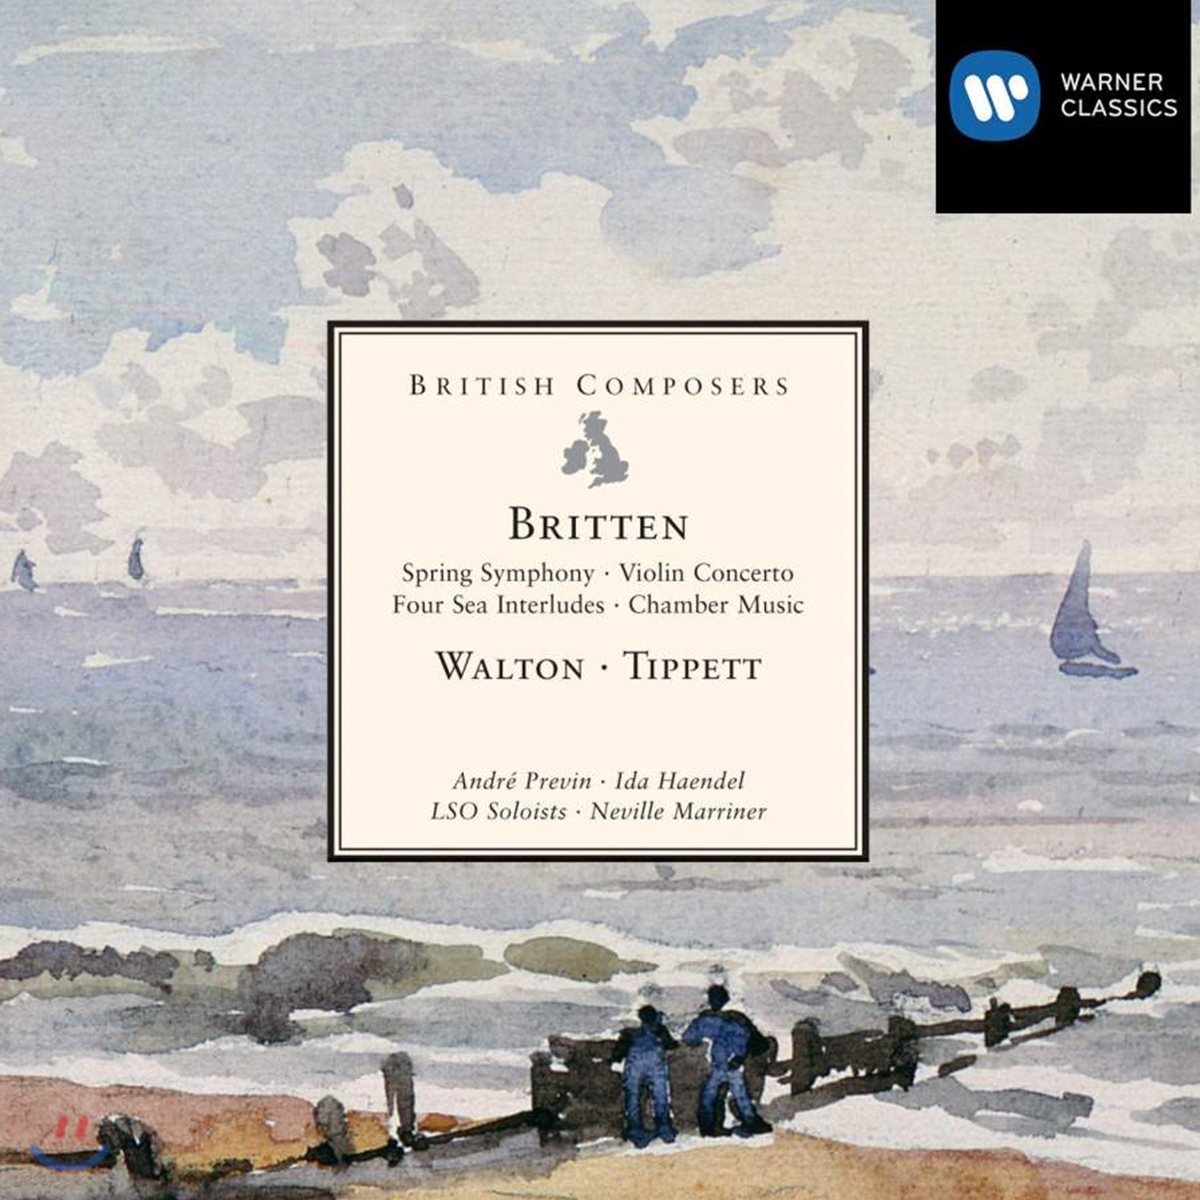 영국의 작곡가 - 벤자민 브리튼 / 윌리엄 월튼 / 마이클 티펫 (Britten / Walton / Tippett)